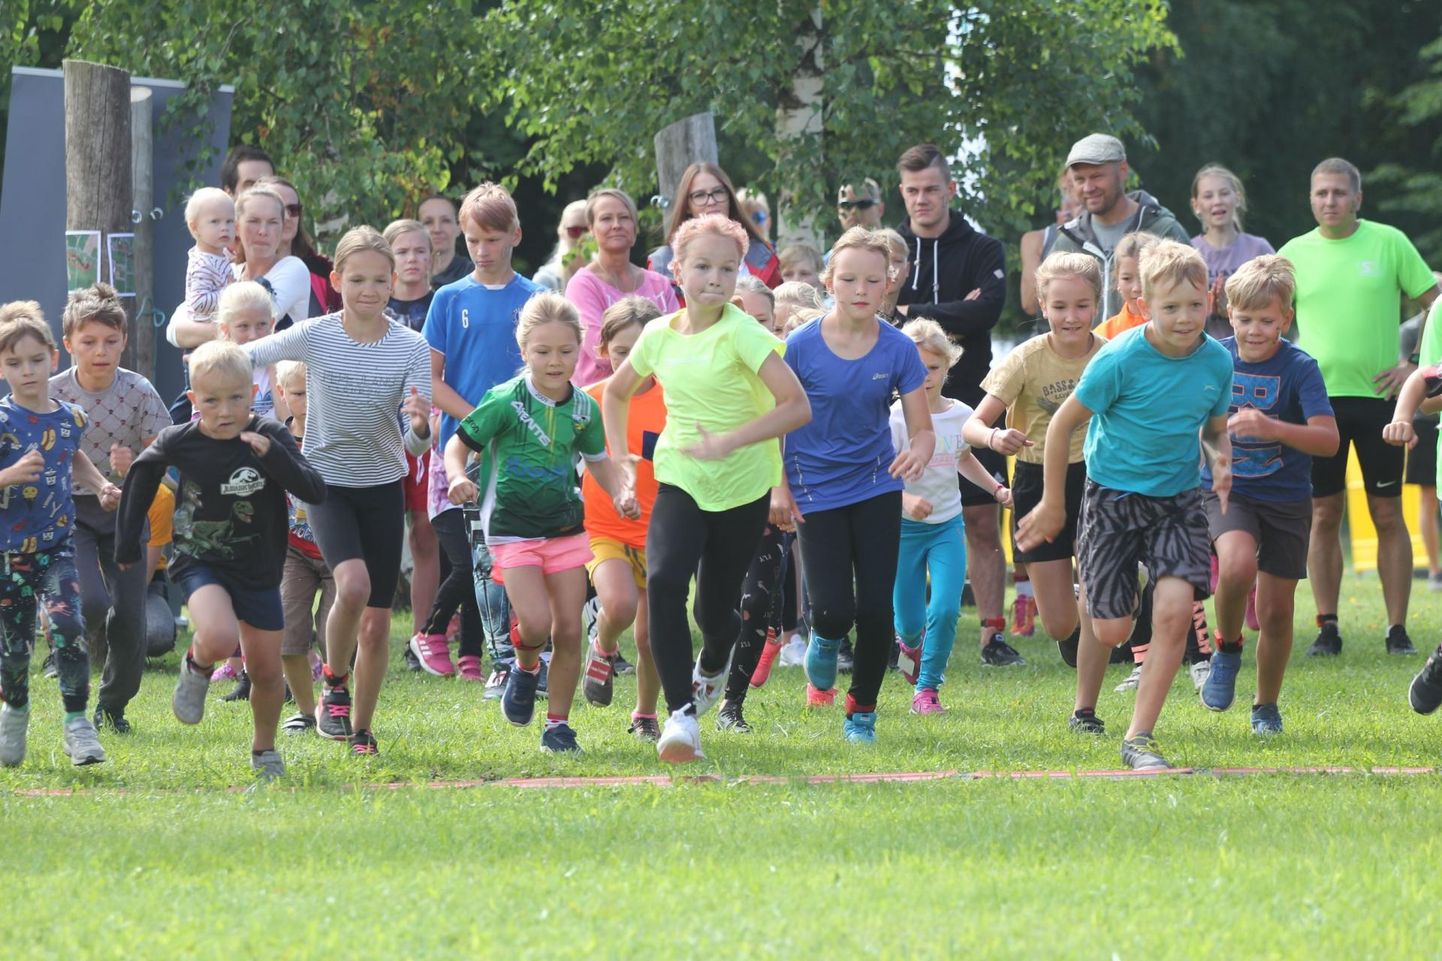 Eestimaa spordiliit Jõud kuulutas Väätsa takistusjooksu selle aasta parimaks piirkondlikuks spordisündmuseks.